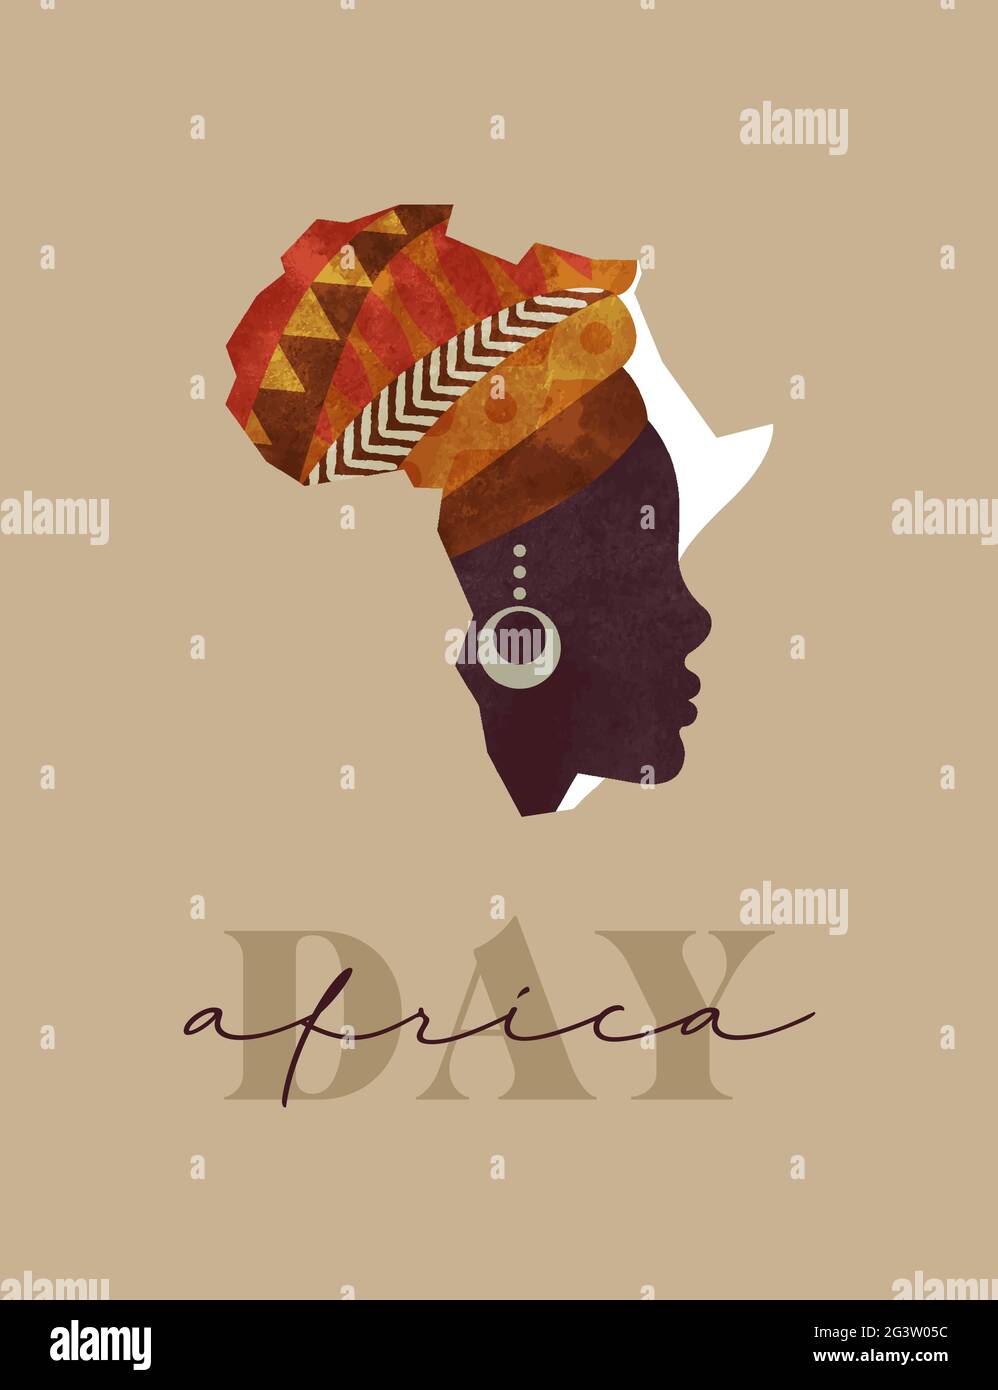 Africa giorno biglietto d'auguri illustrazione, continente africano mappa fatta di bella donna nera faccia con tradizionale arte tribale testa turbante. Maggio 25 holida Illustrazione Vettoriale